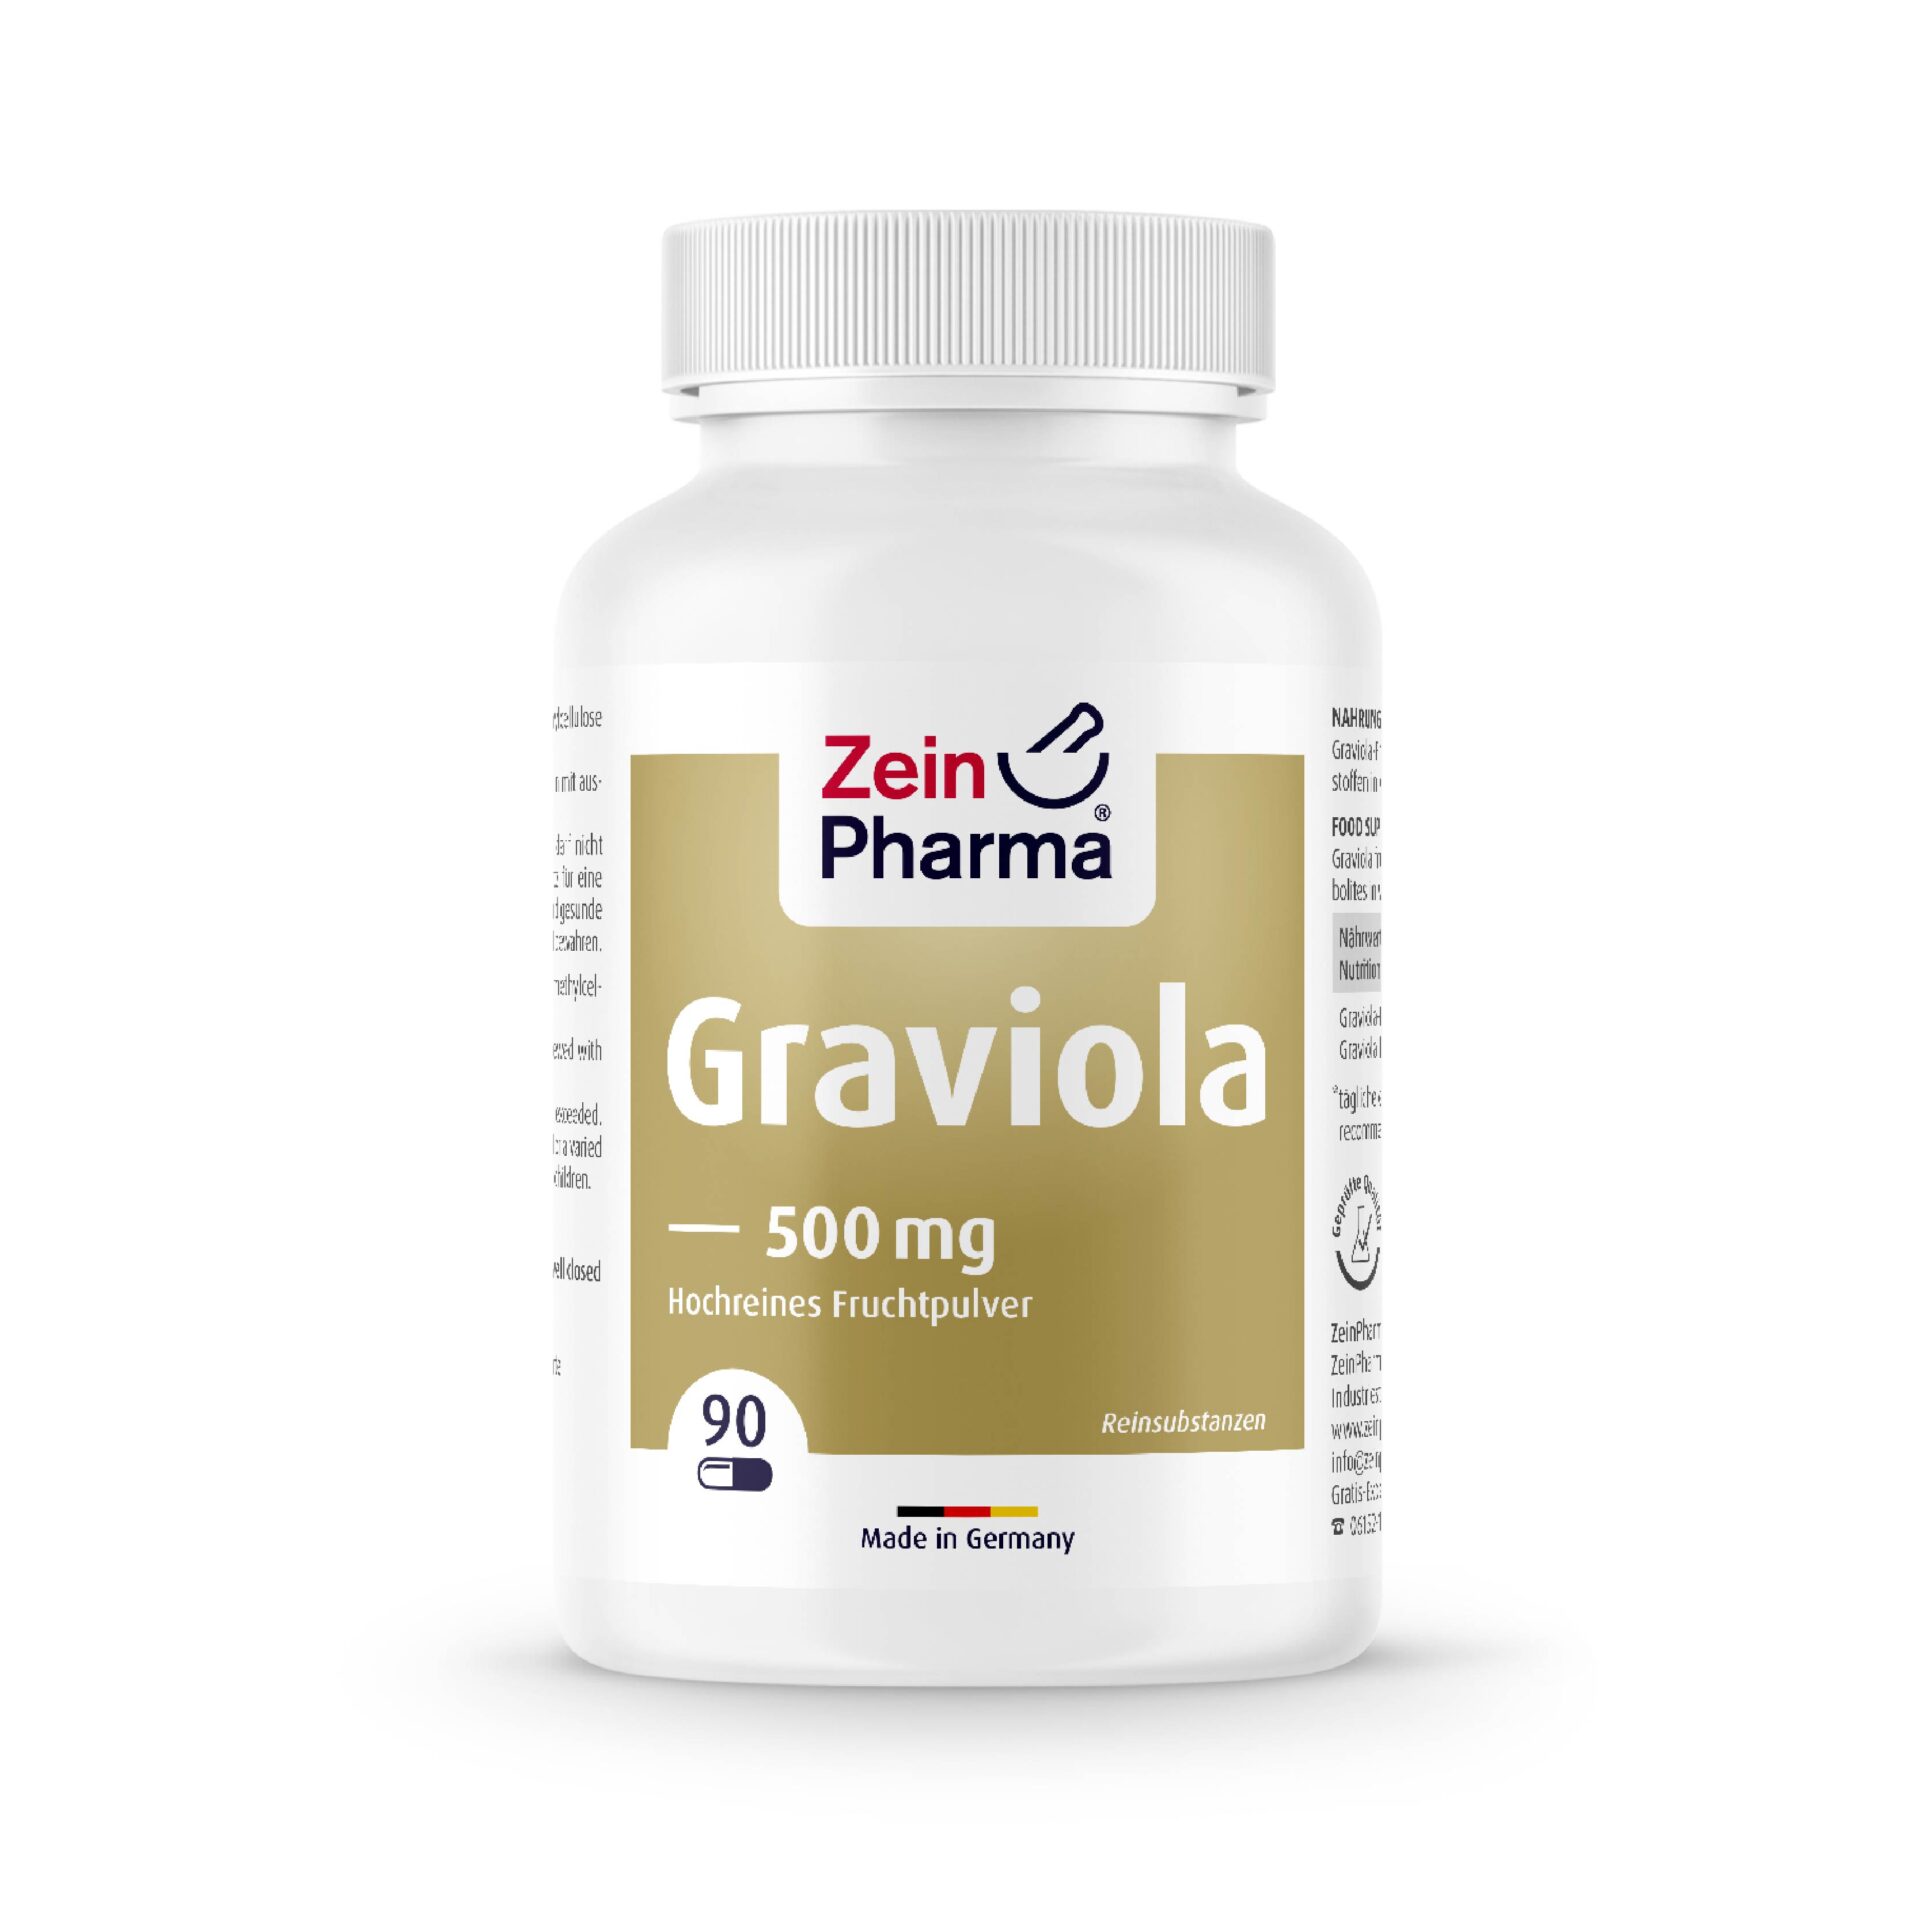 ZeinPharma Myo-Inositol 500mg, 60 veg. capsules